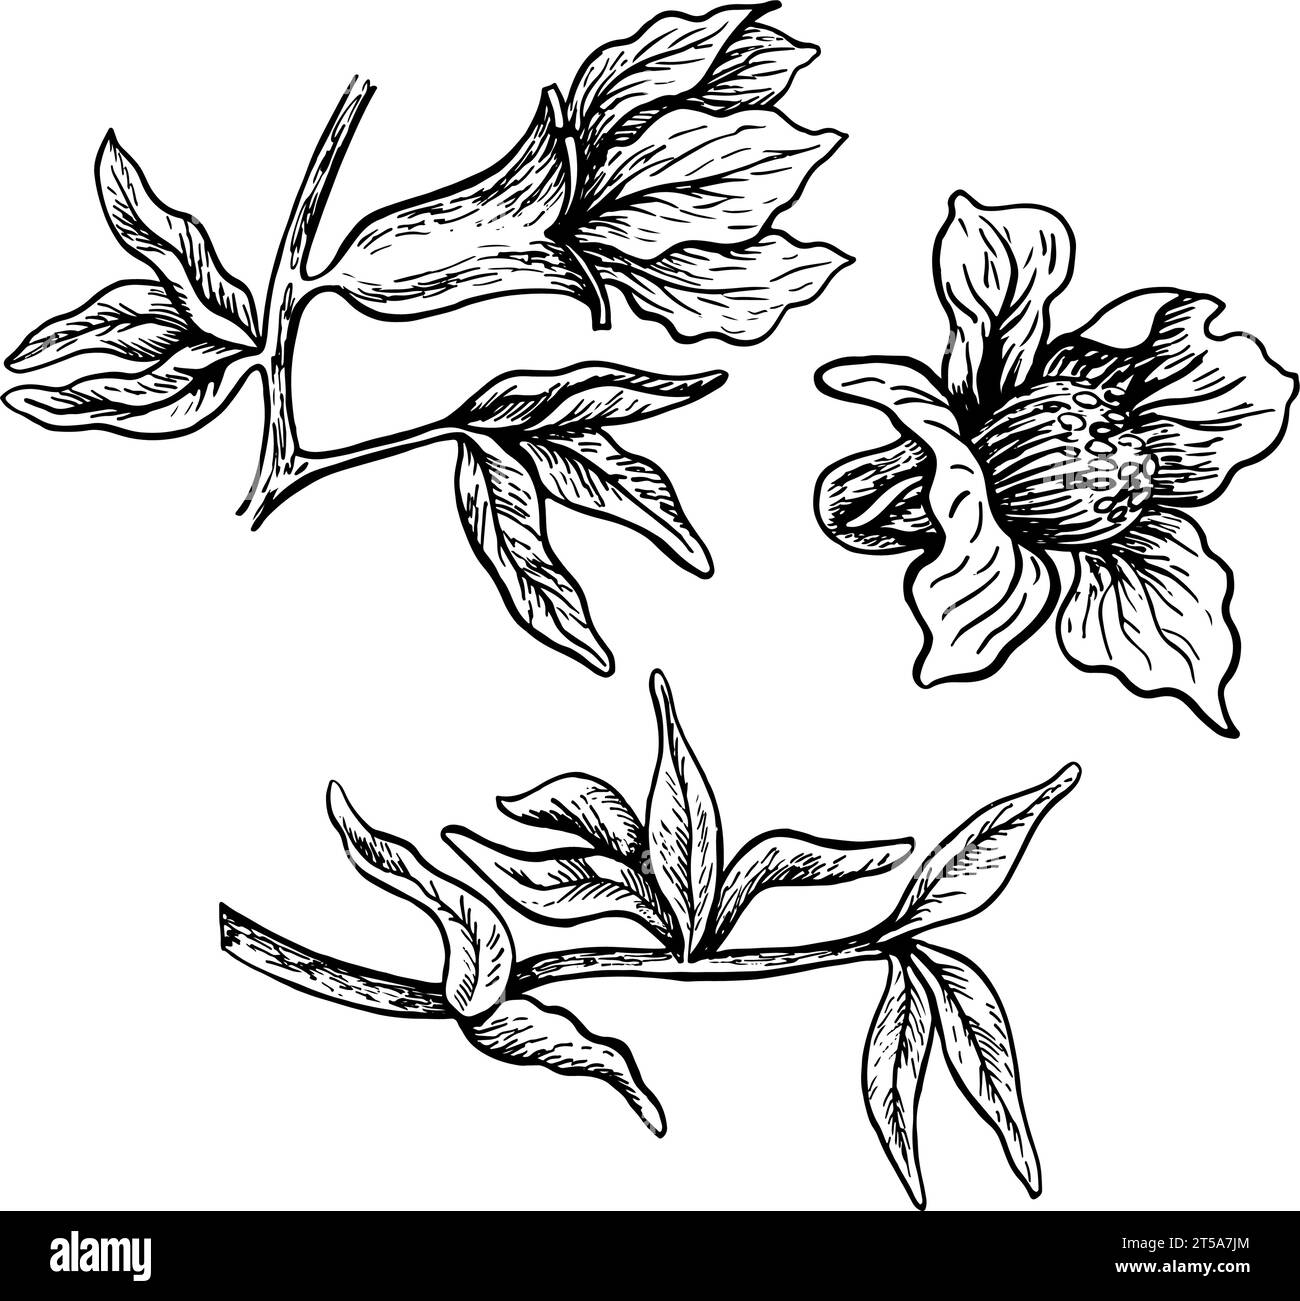 Foglie e fiori di melograno, illustrazione grafica vettoriale in bianco e nero disegnata a mano. Isolato su sfondo bianco. Elemento di progettazione per il confezionamento, Illustrazione Vettoriale